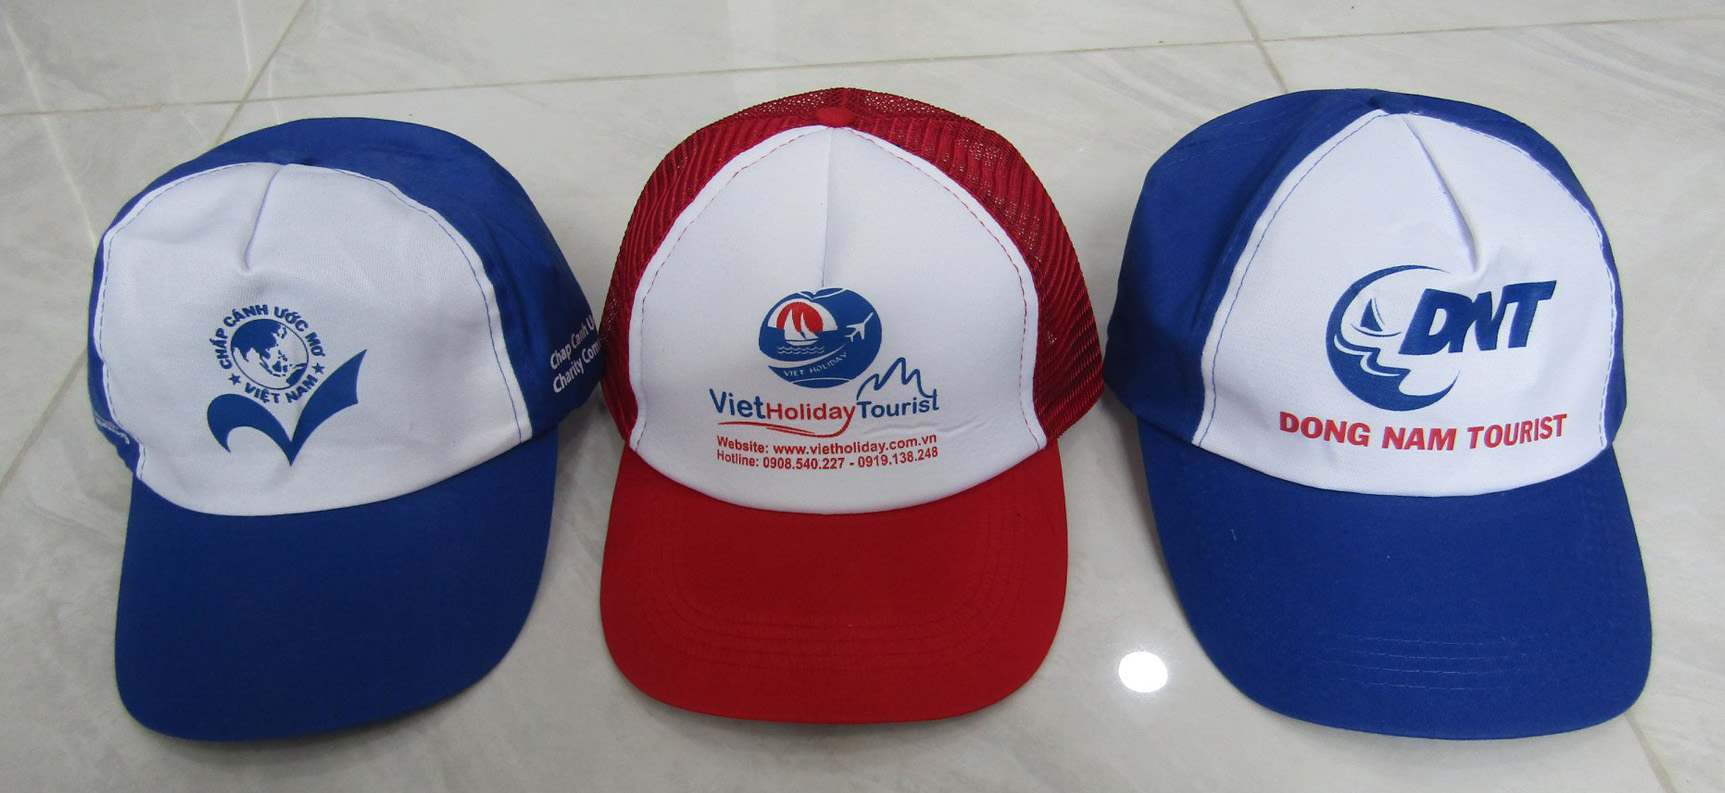 Mẫu nón kết in logo theo yêu cầu của khách hàng. Đây là những mẫu nón kết giá rẻ dành tặng dùng để quảng cáo công ty.